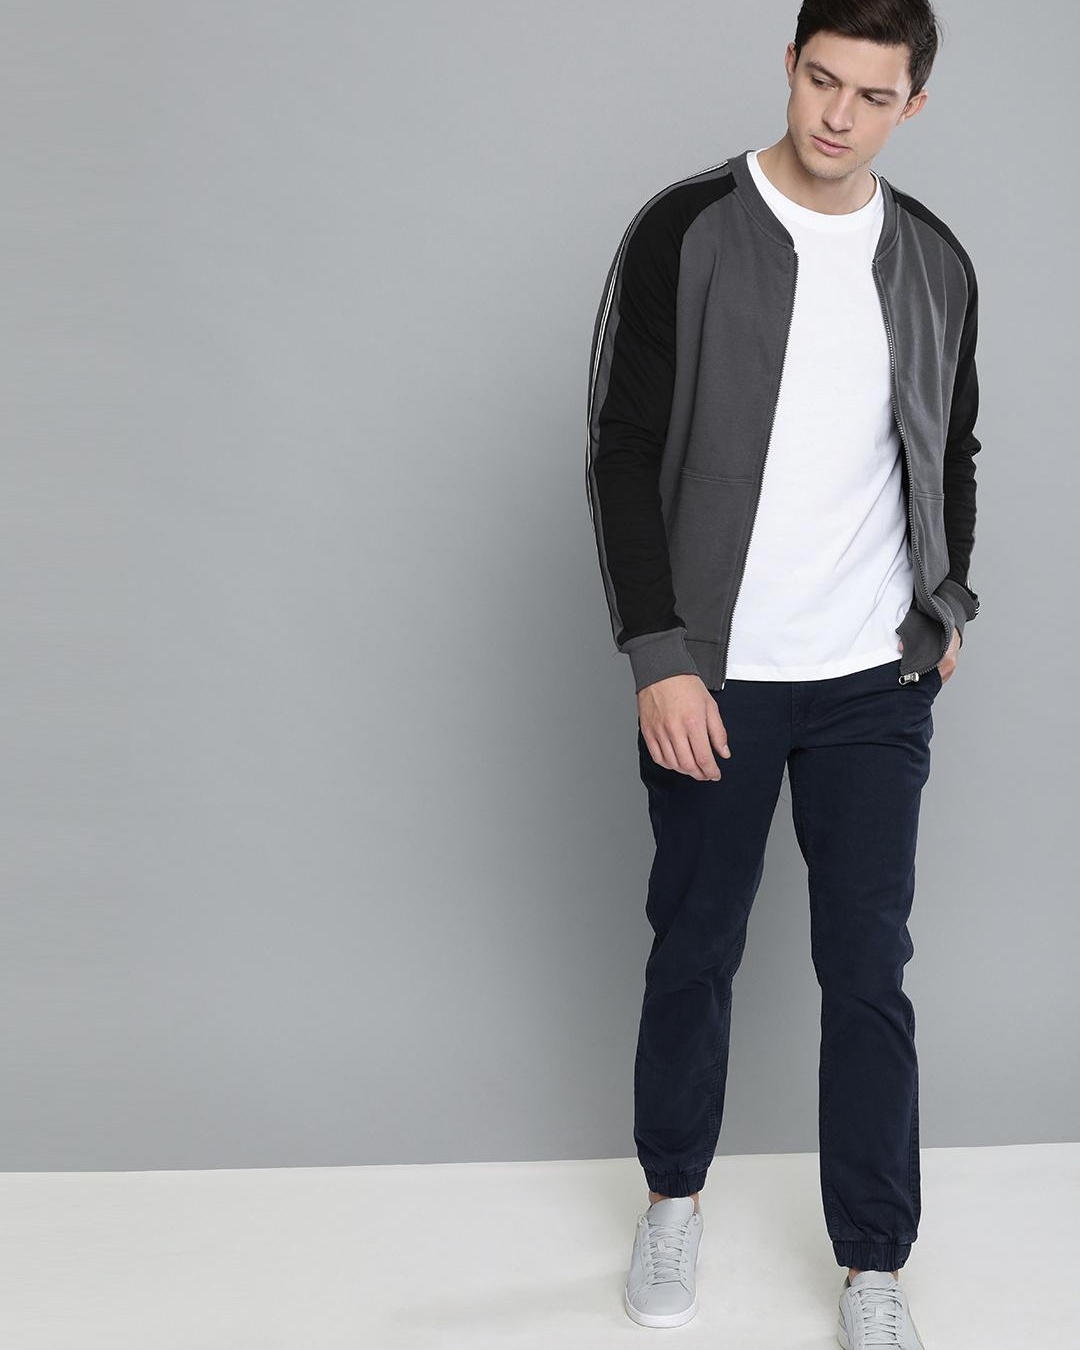 Buy Men's Grey & Black Color Block Jacket for Men Grey Online at Bewakoof